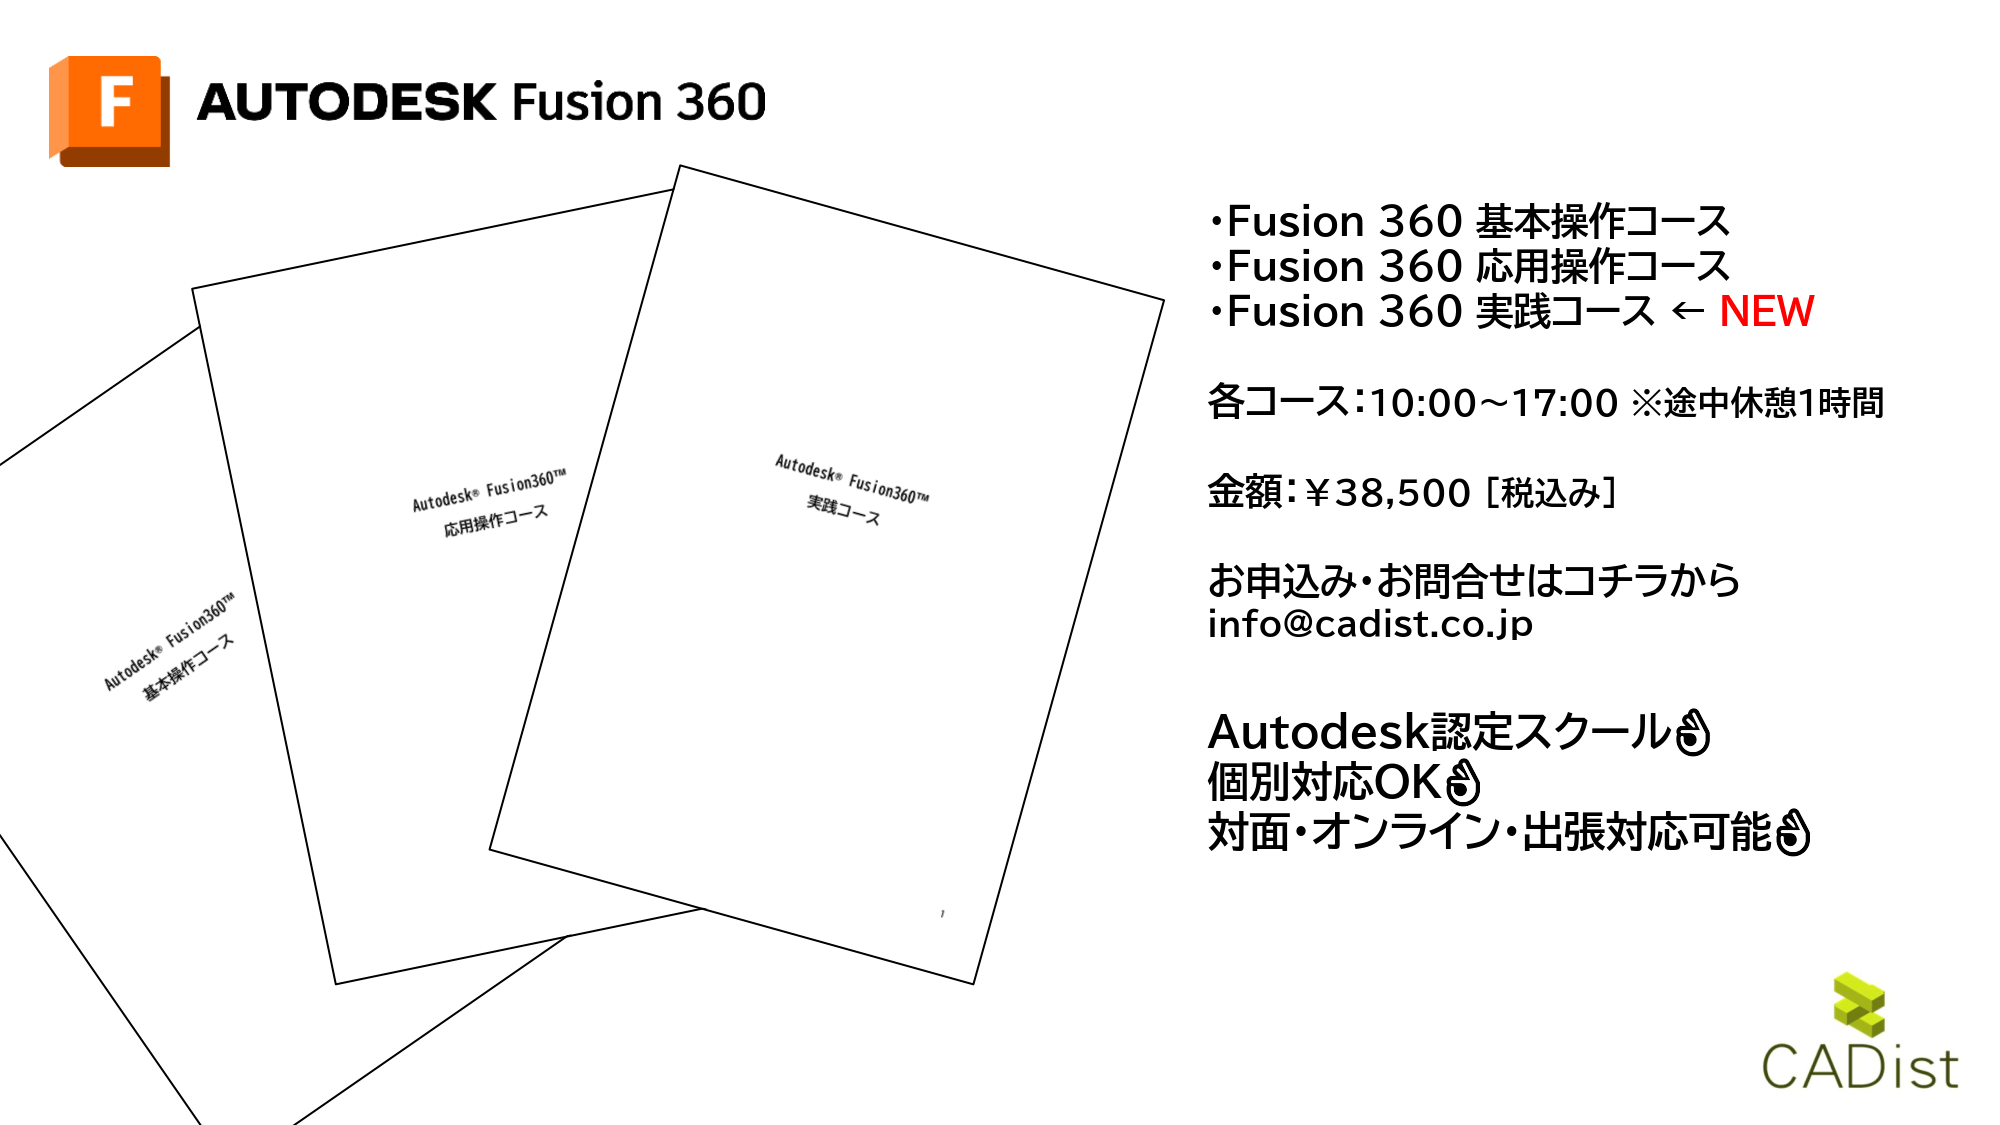 Fusion 360のトレーニングの内容が変更致しました。